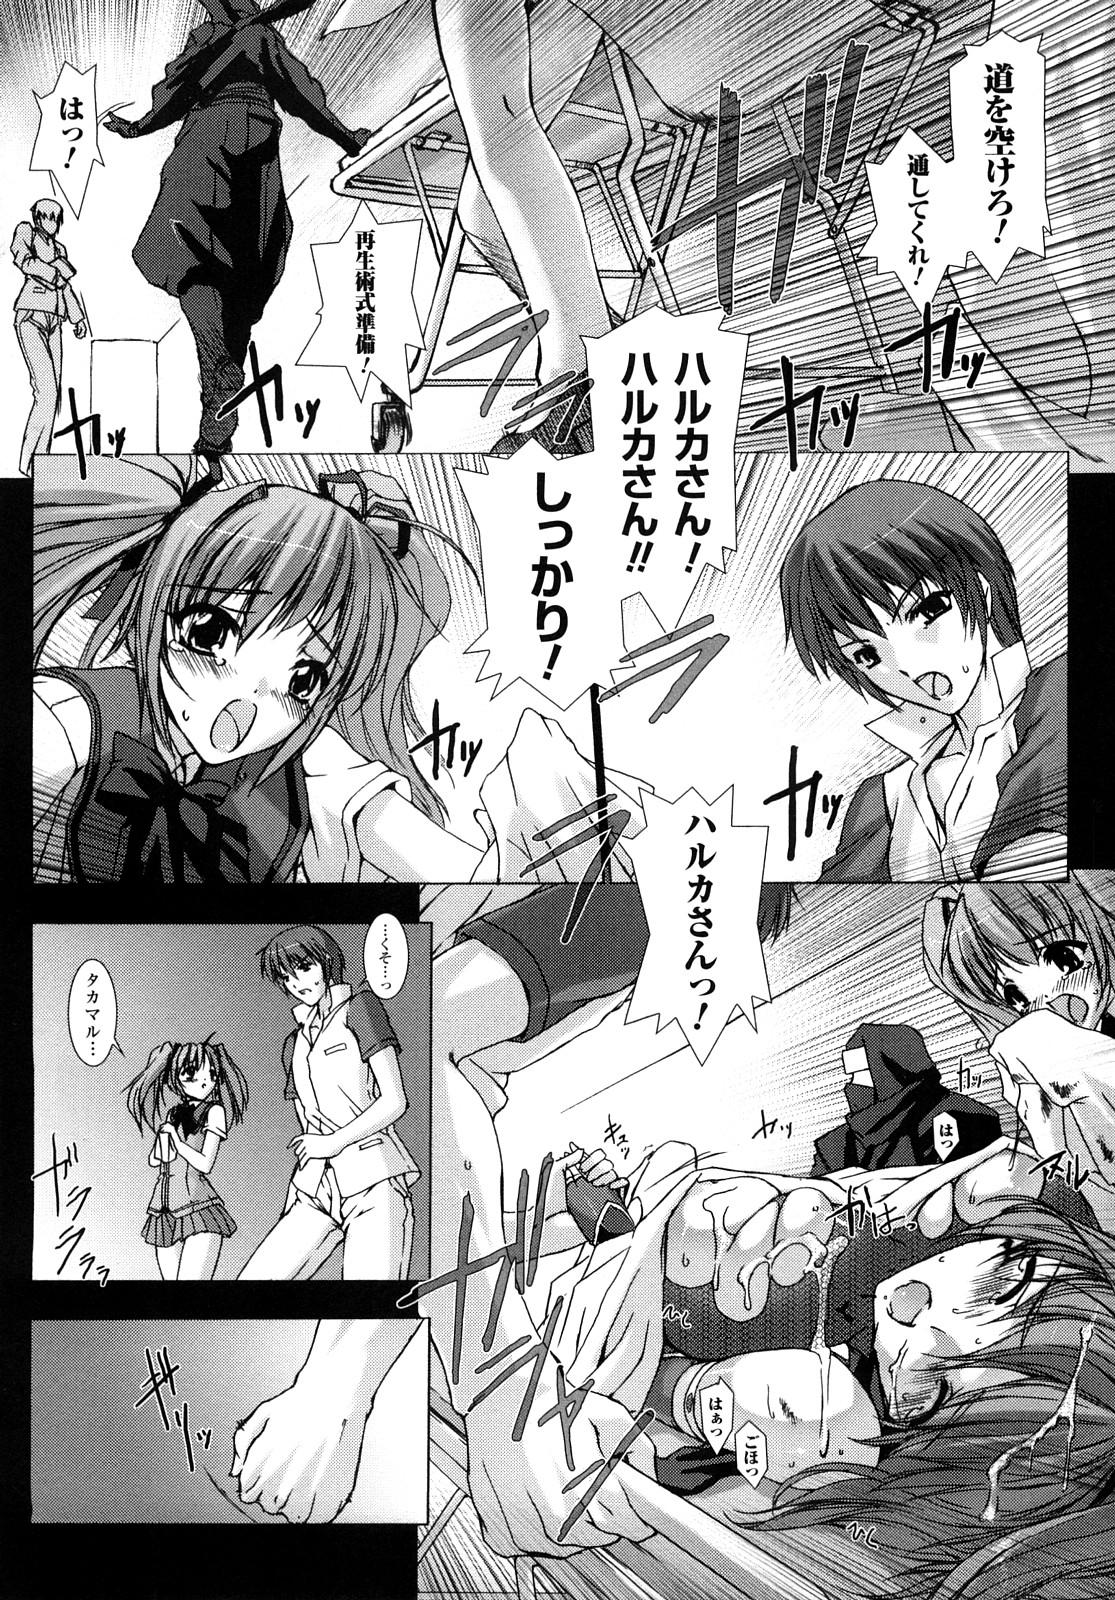 Masturbates Choukousennin Haruka: Yaiba no Maki - Beat blades haruka Porno - Page 10